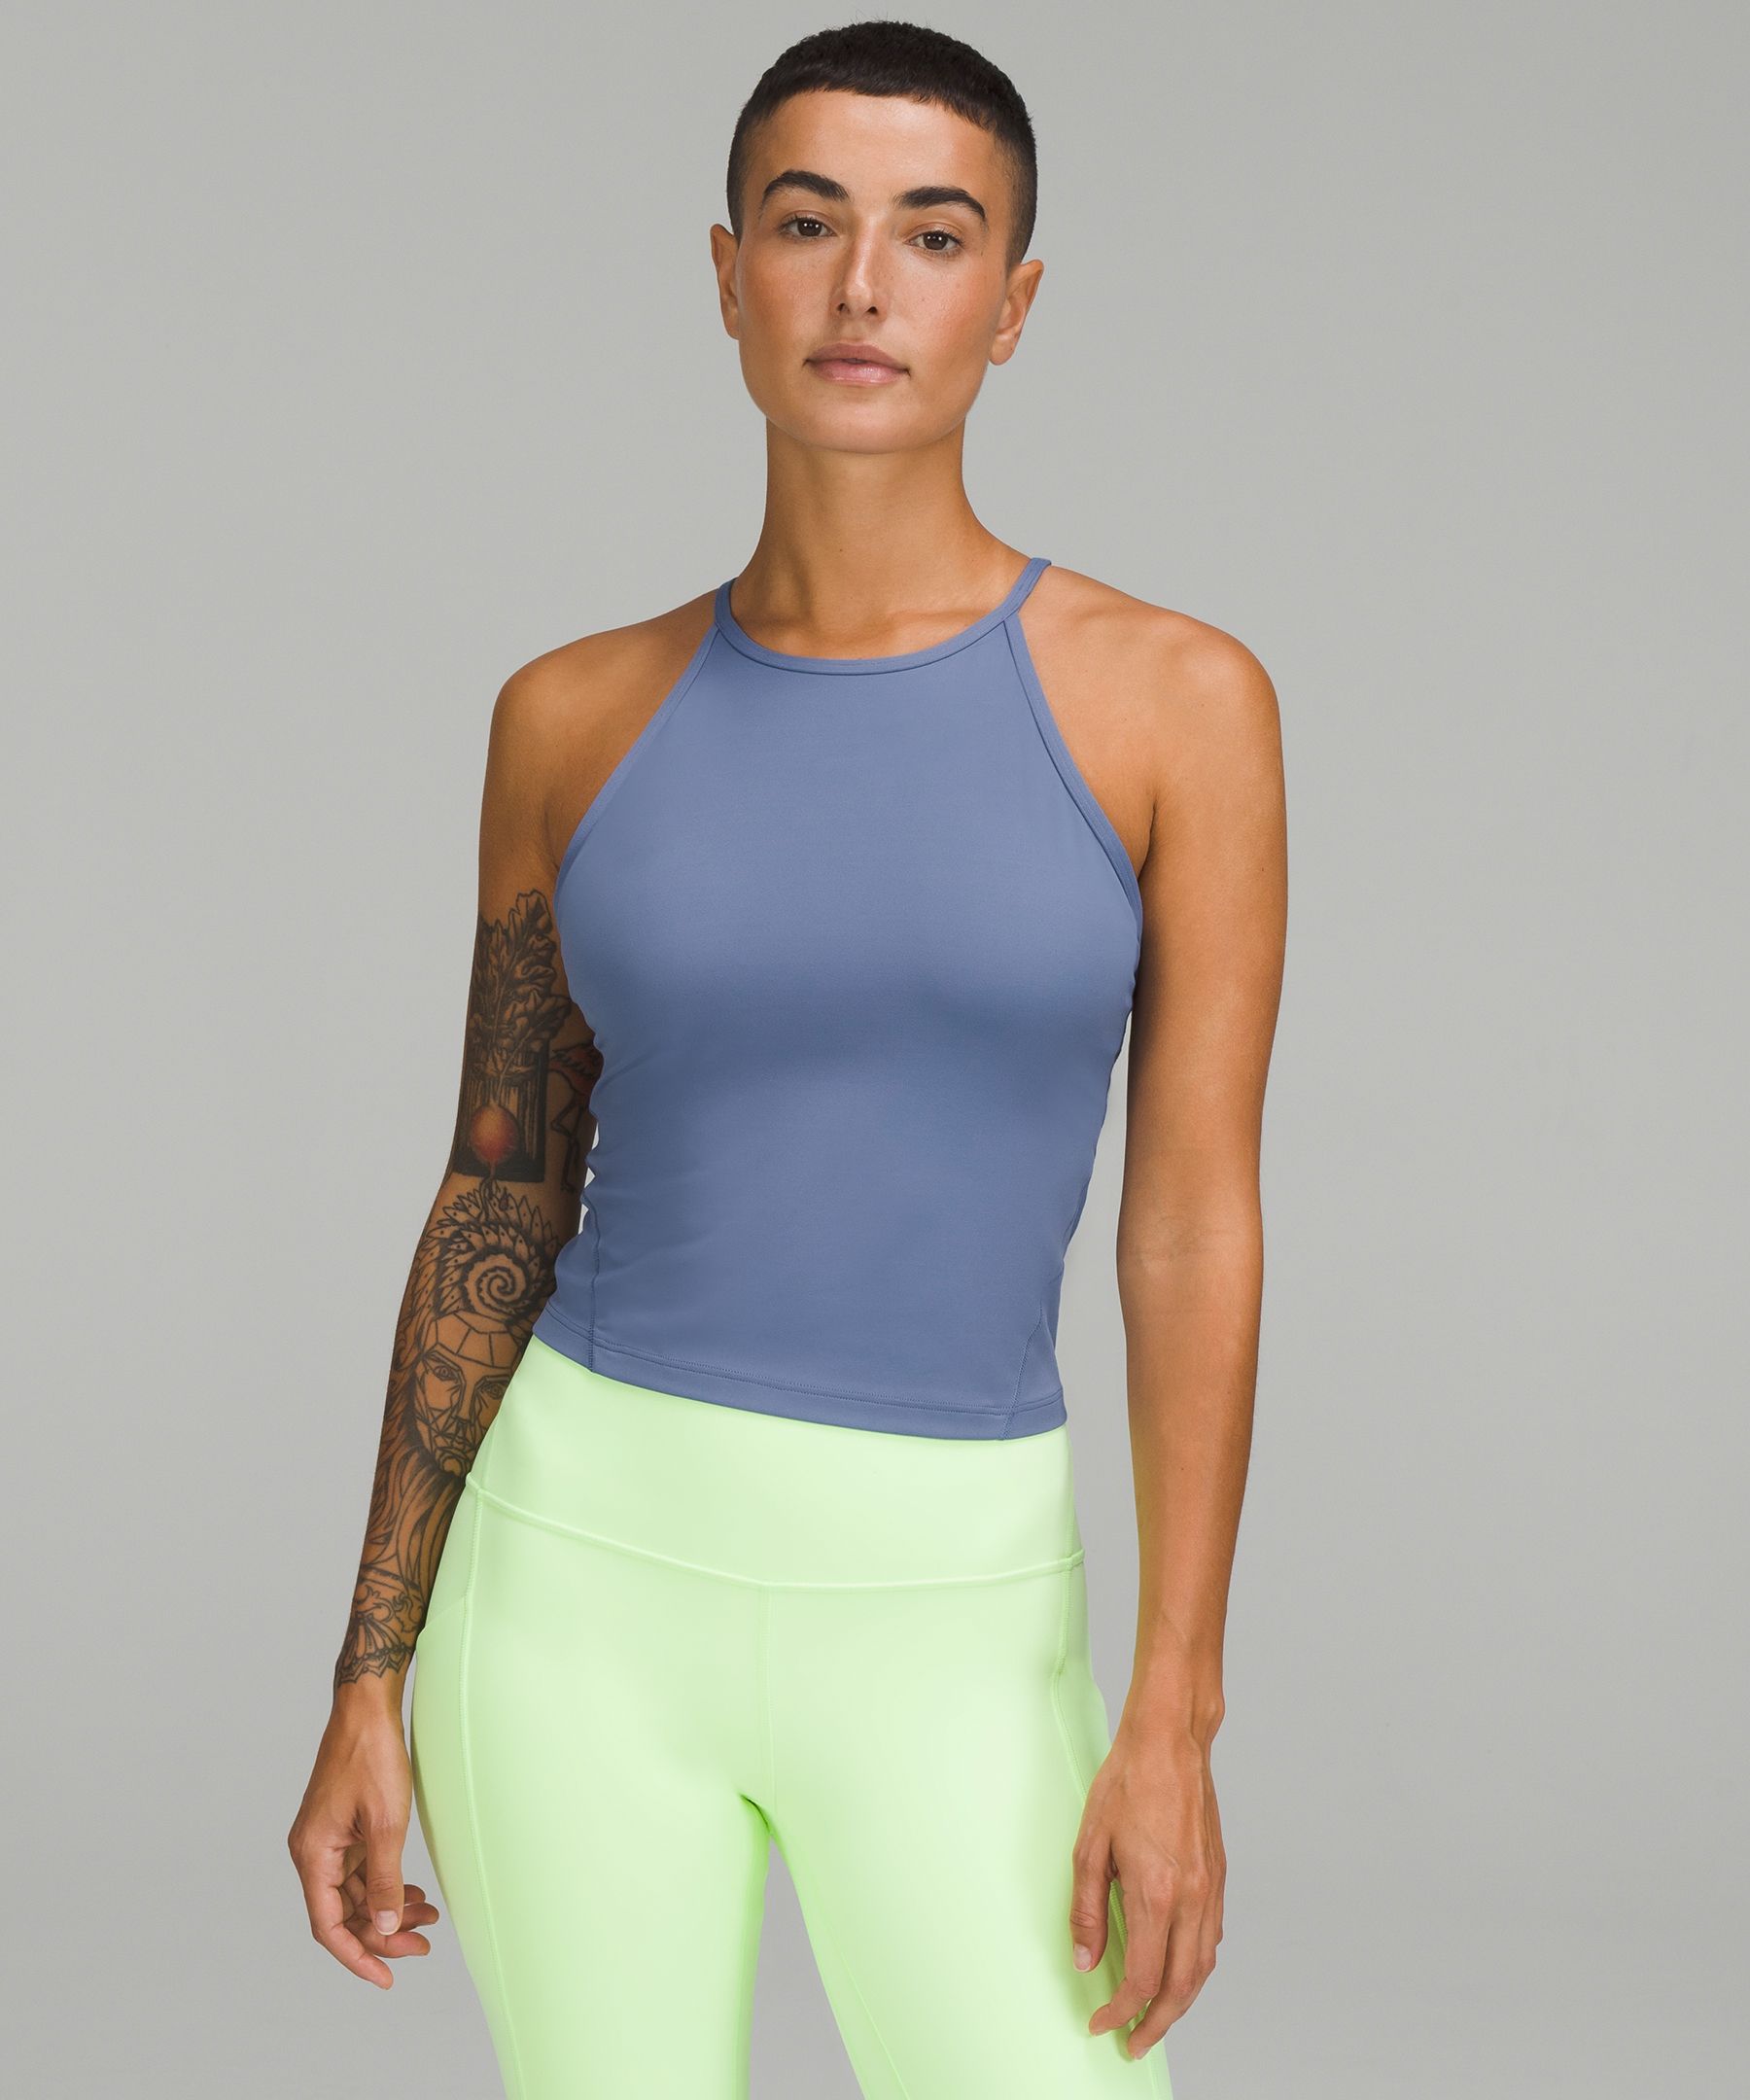 Lightweight High-Neck Yoga Tank Top, Women's Sleeveless & Tank Tops